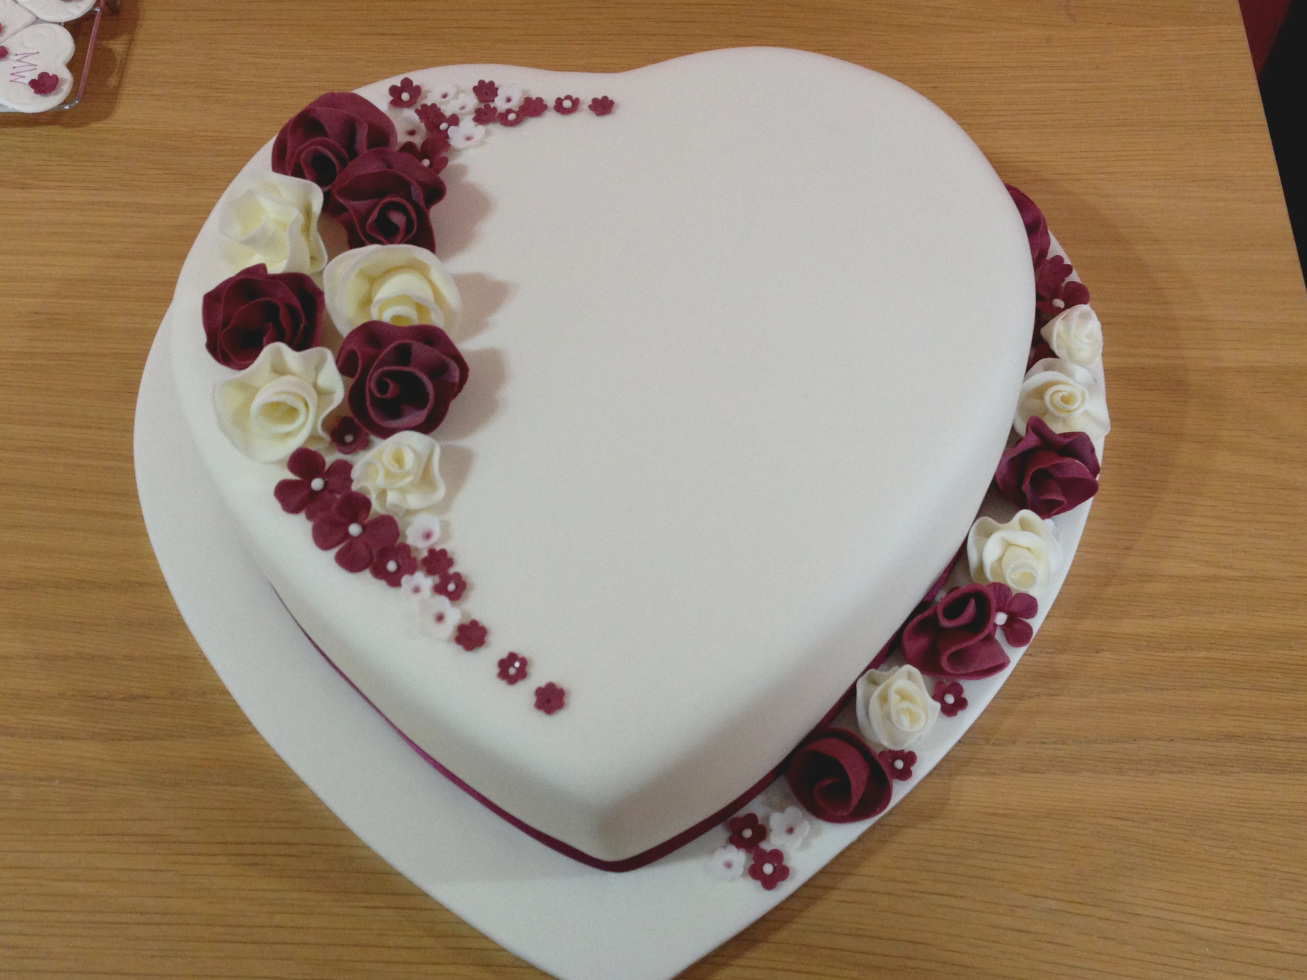 20  mẫu bánh sinh nhật hình trái tim đẹp lãng mạn gửi đến những người thân thương 